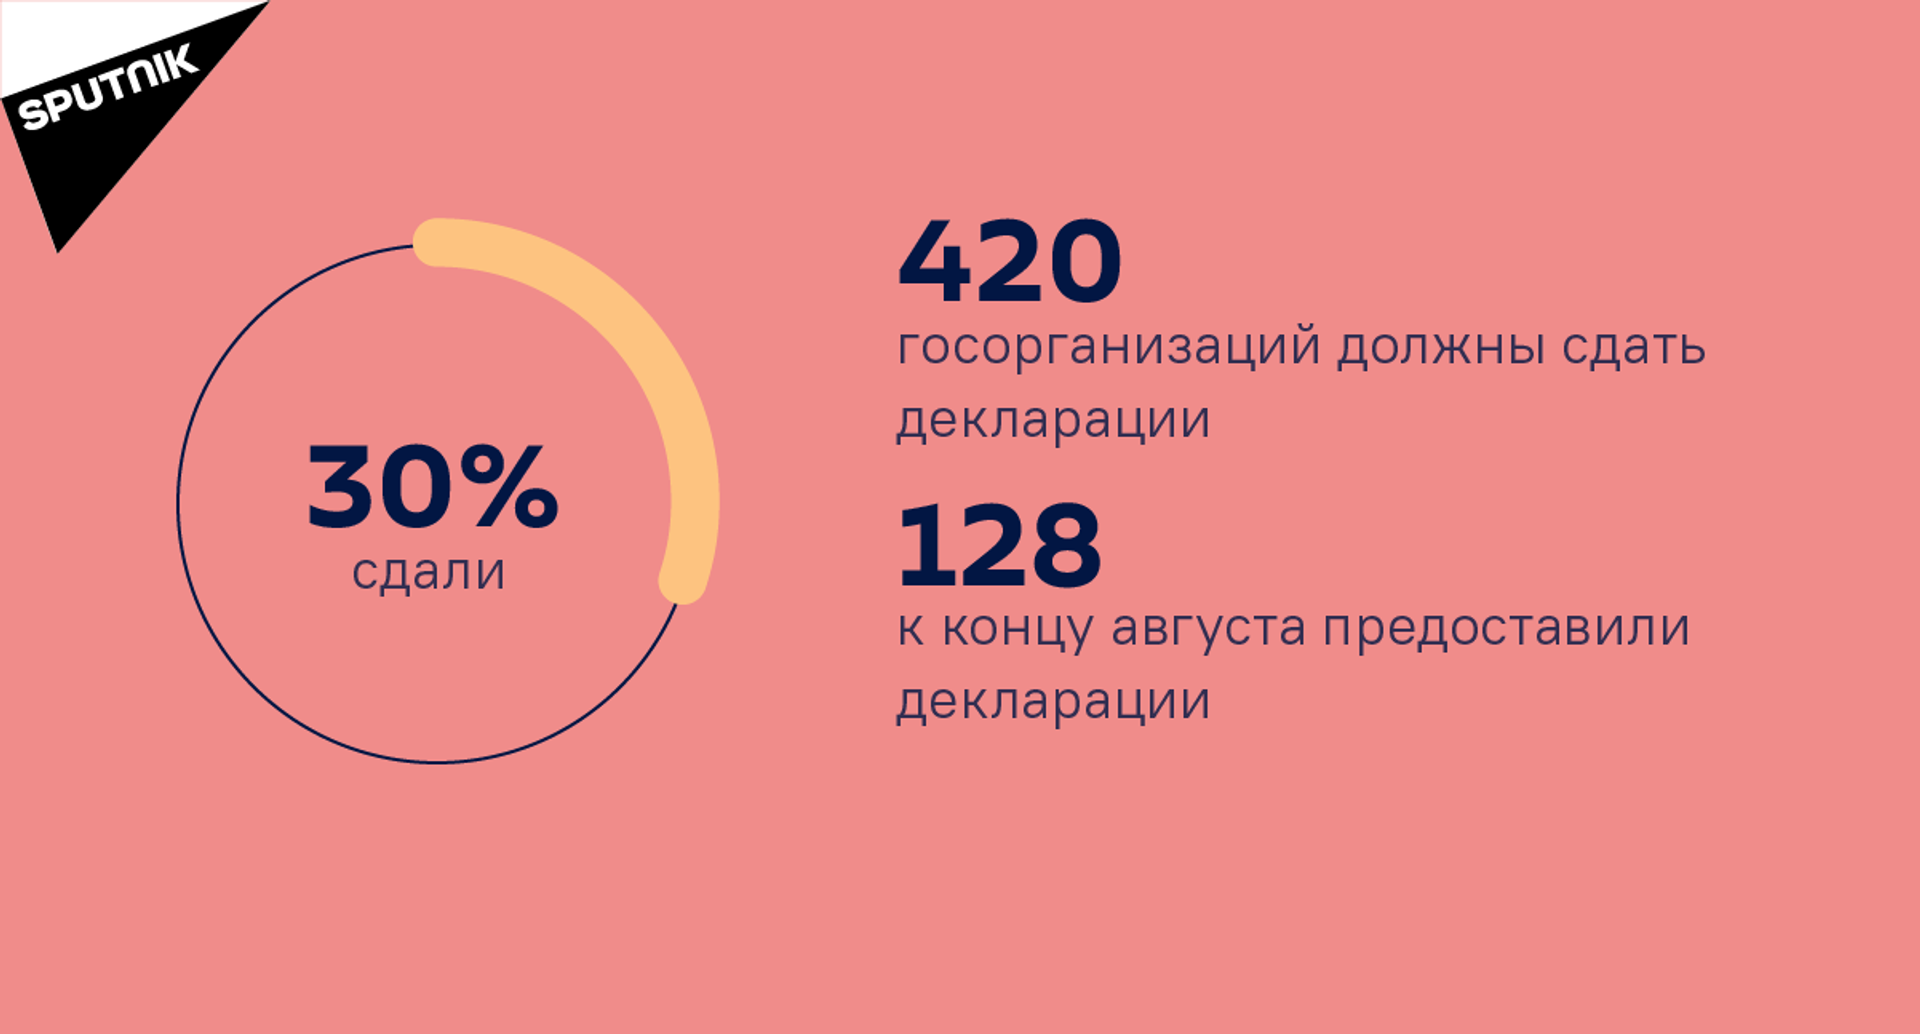 Количество госорганизаций, которые предоставили декларации к концу августа 2021 года - Sputnik Абхазия, 1920, 12.10.2021